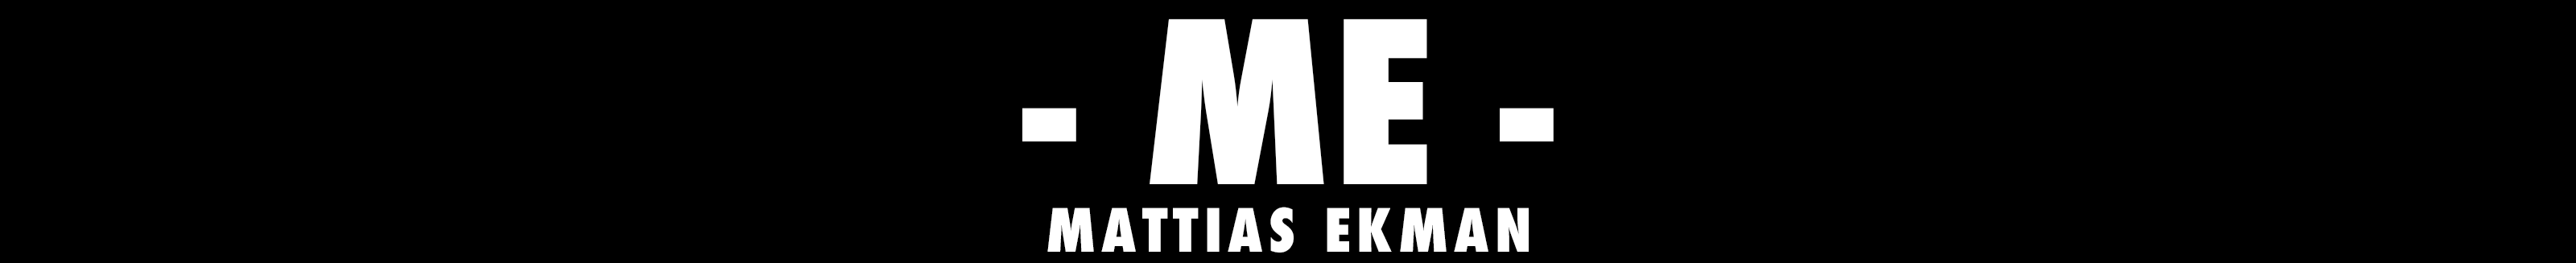 Mattias Ekman's profile banner